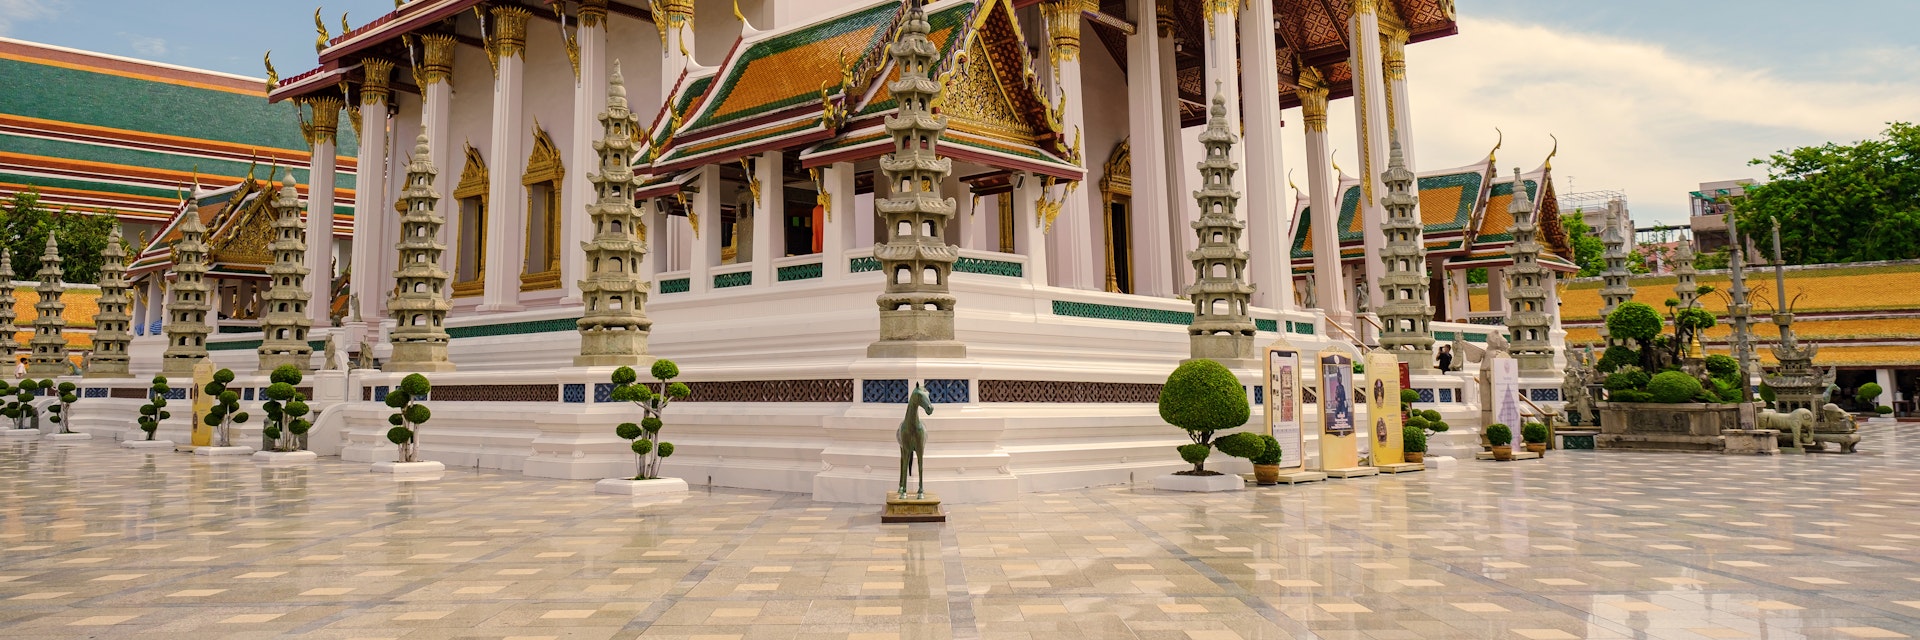 Thai Buddhist temple Wat Suthat.